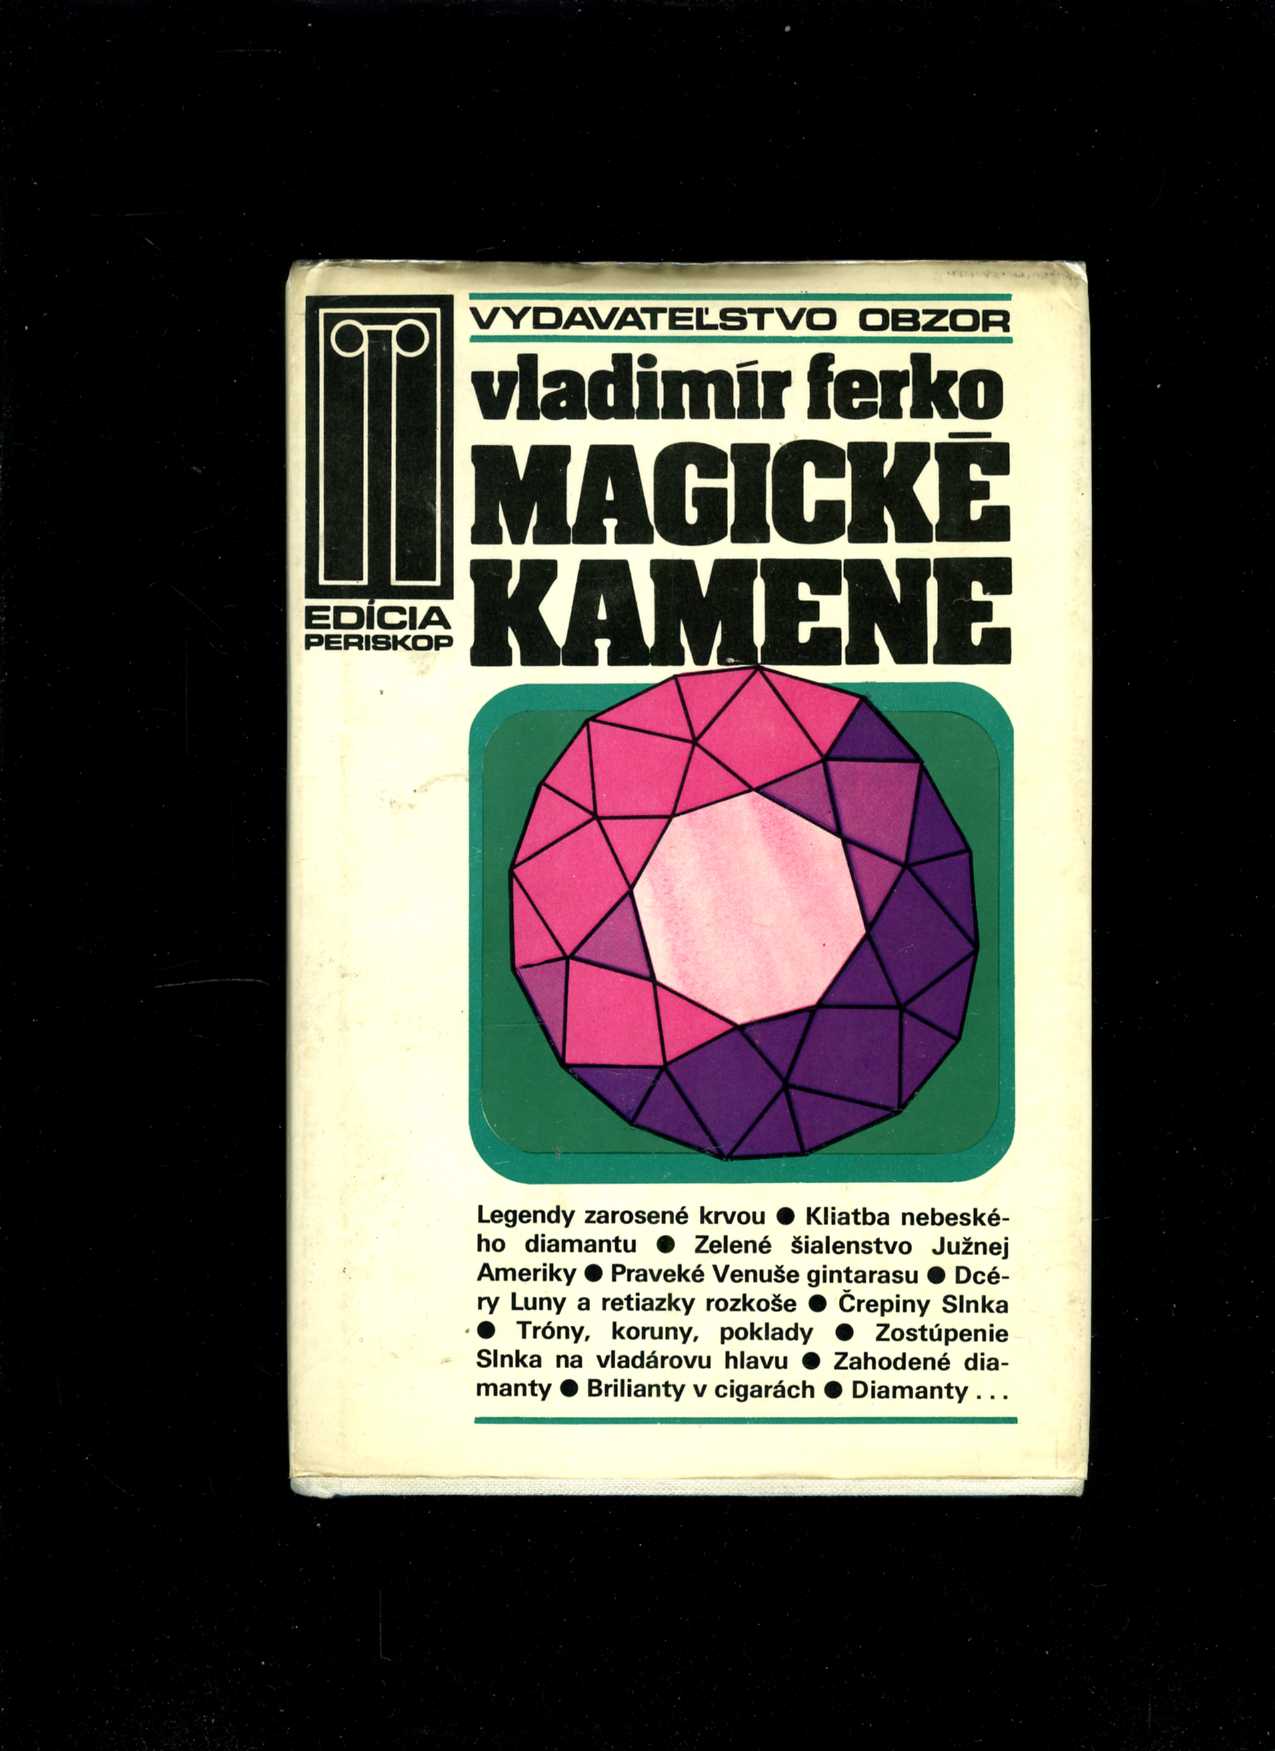 Magické kamene (Vladimír Ferko)